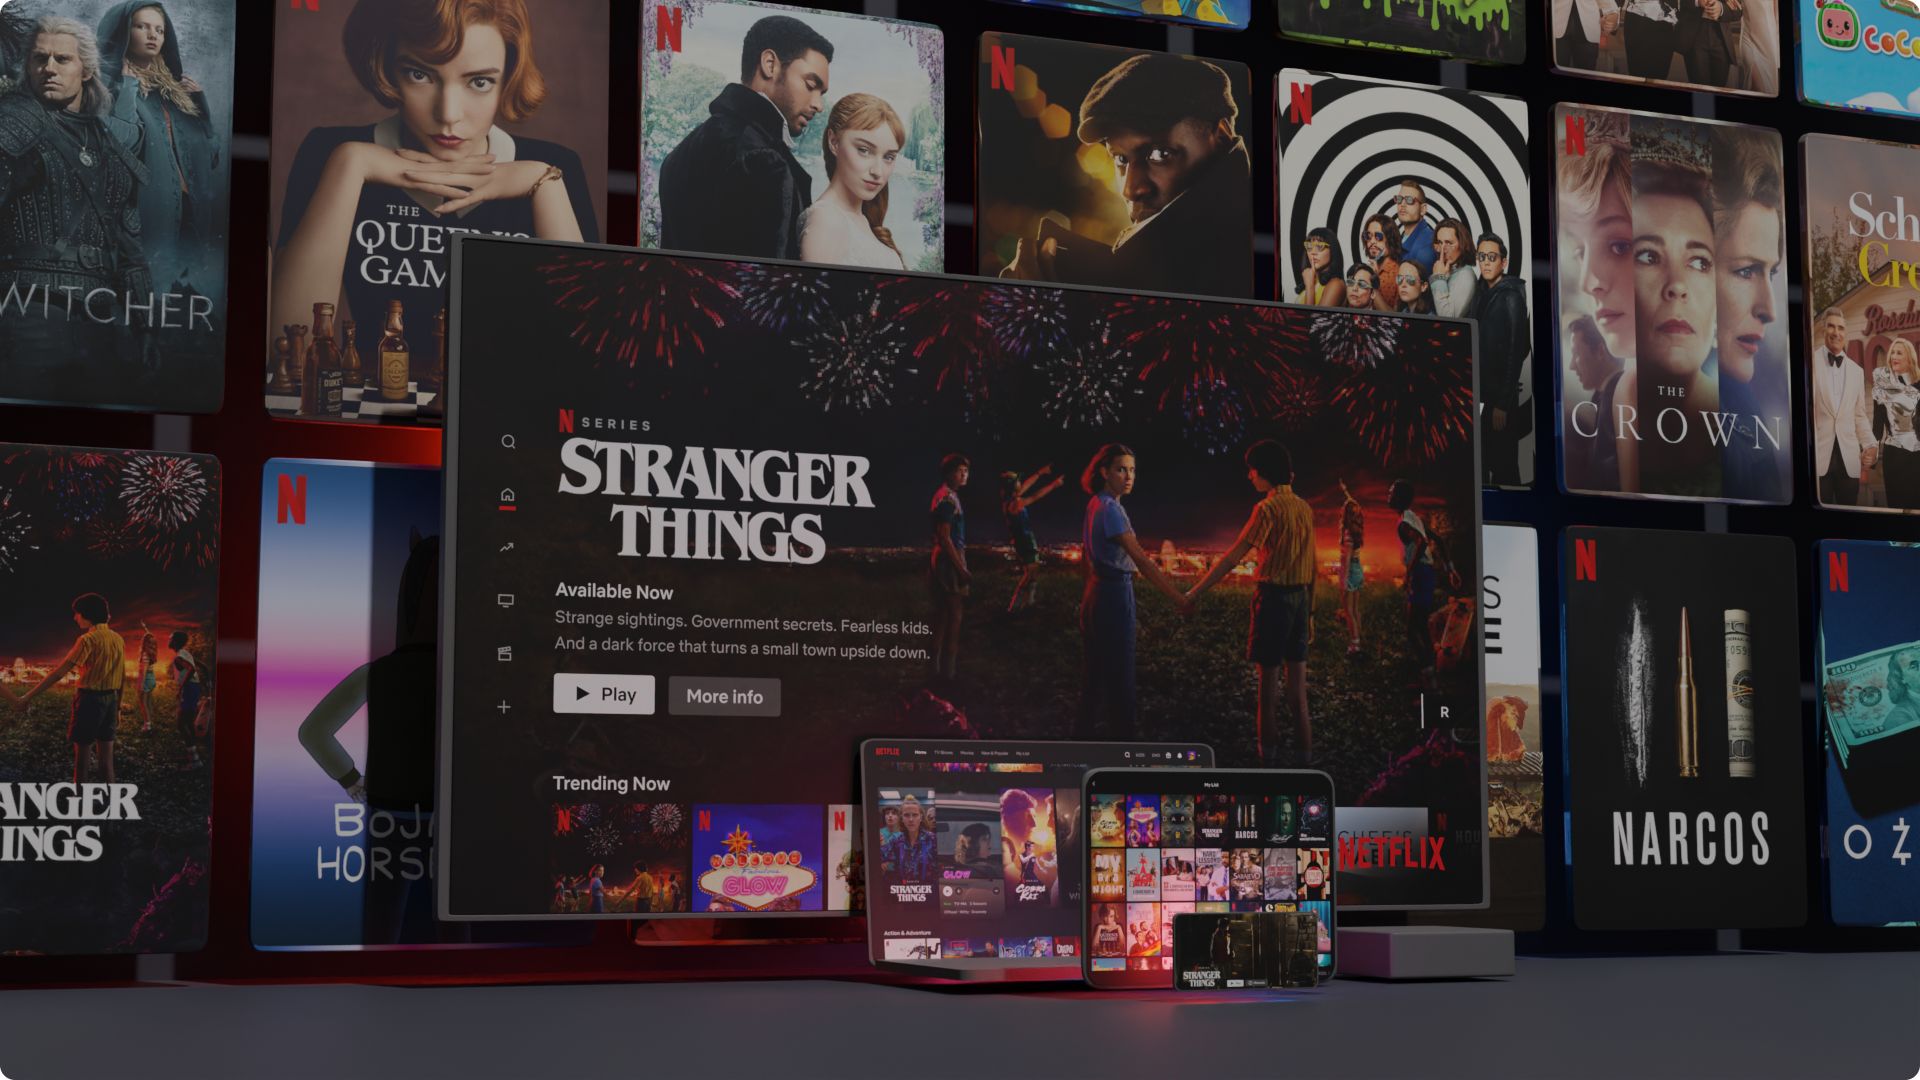 Netflix acaba plano básico no Brasil: como fica para usuários antigos e  novos - TechShake